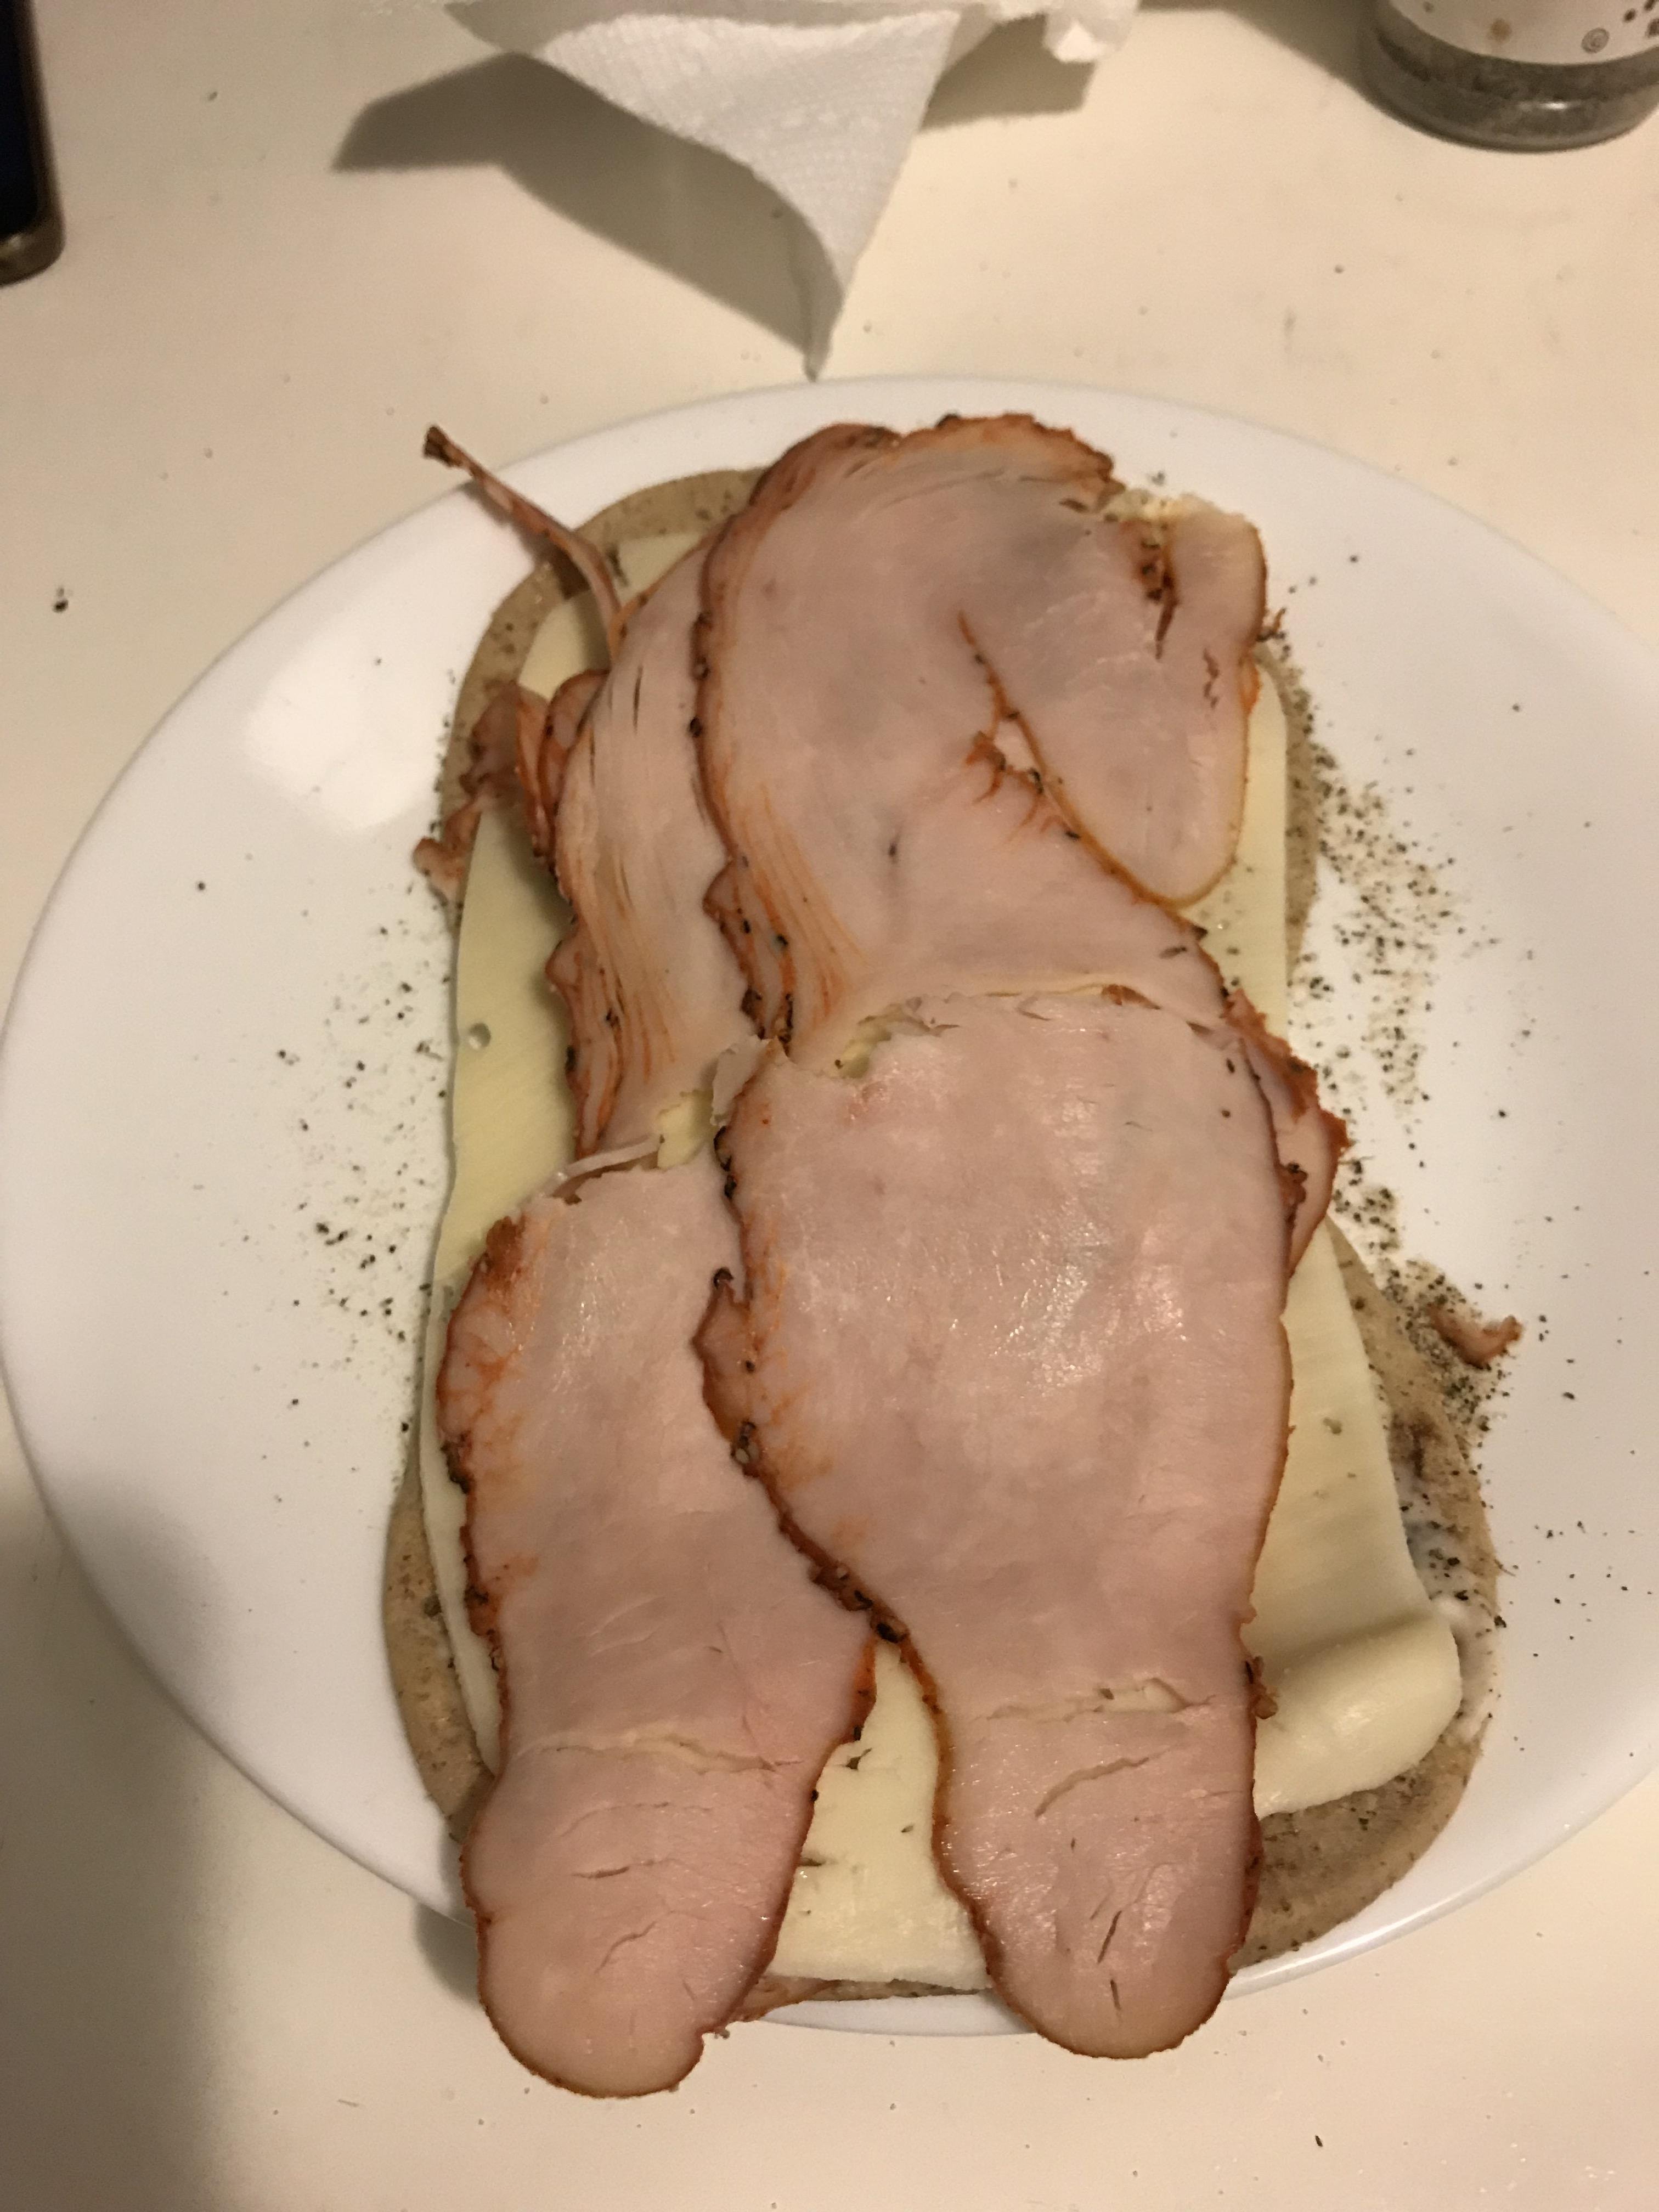 This Turkey Sandwich